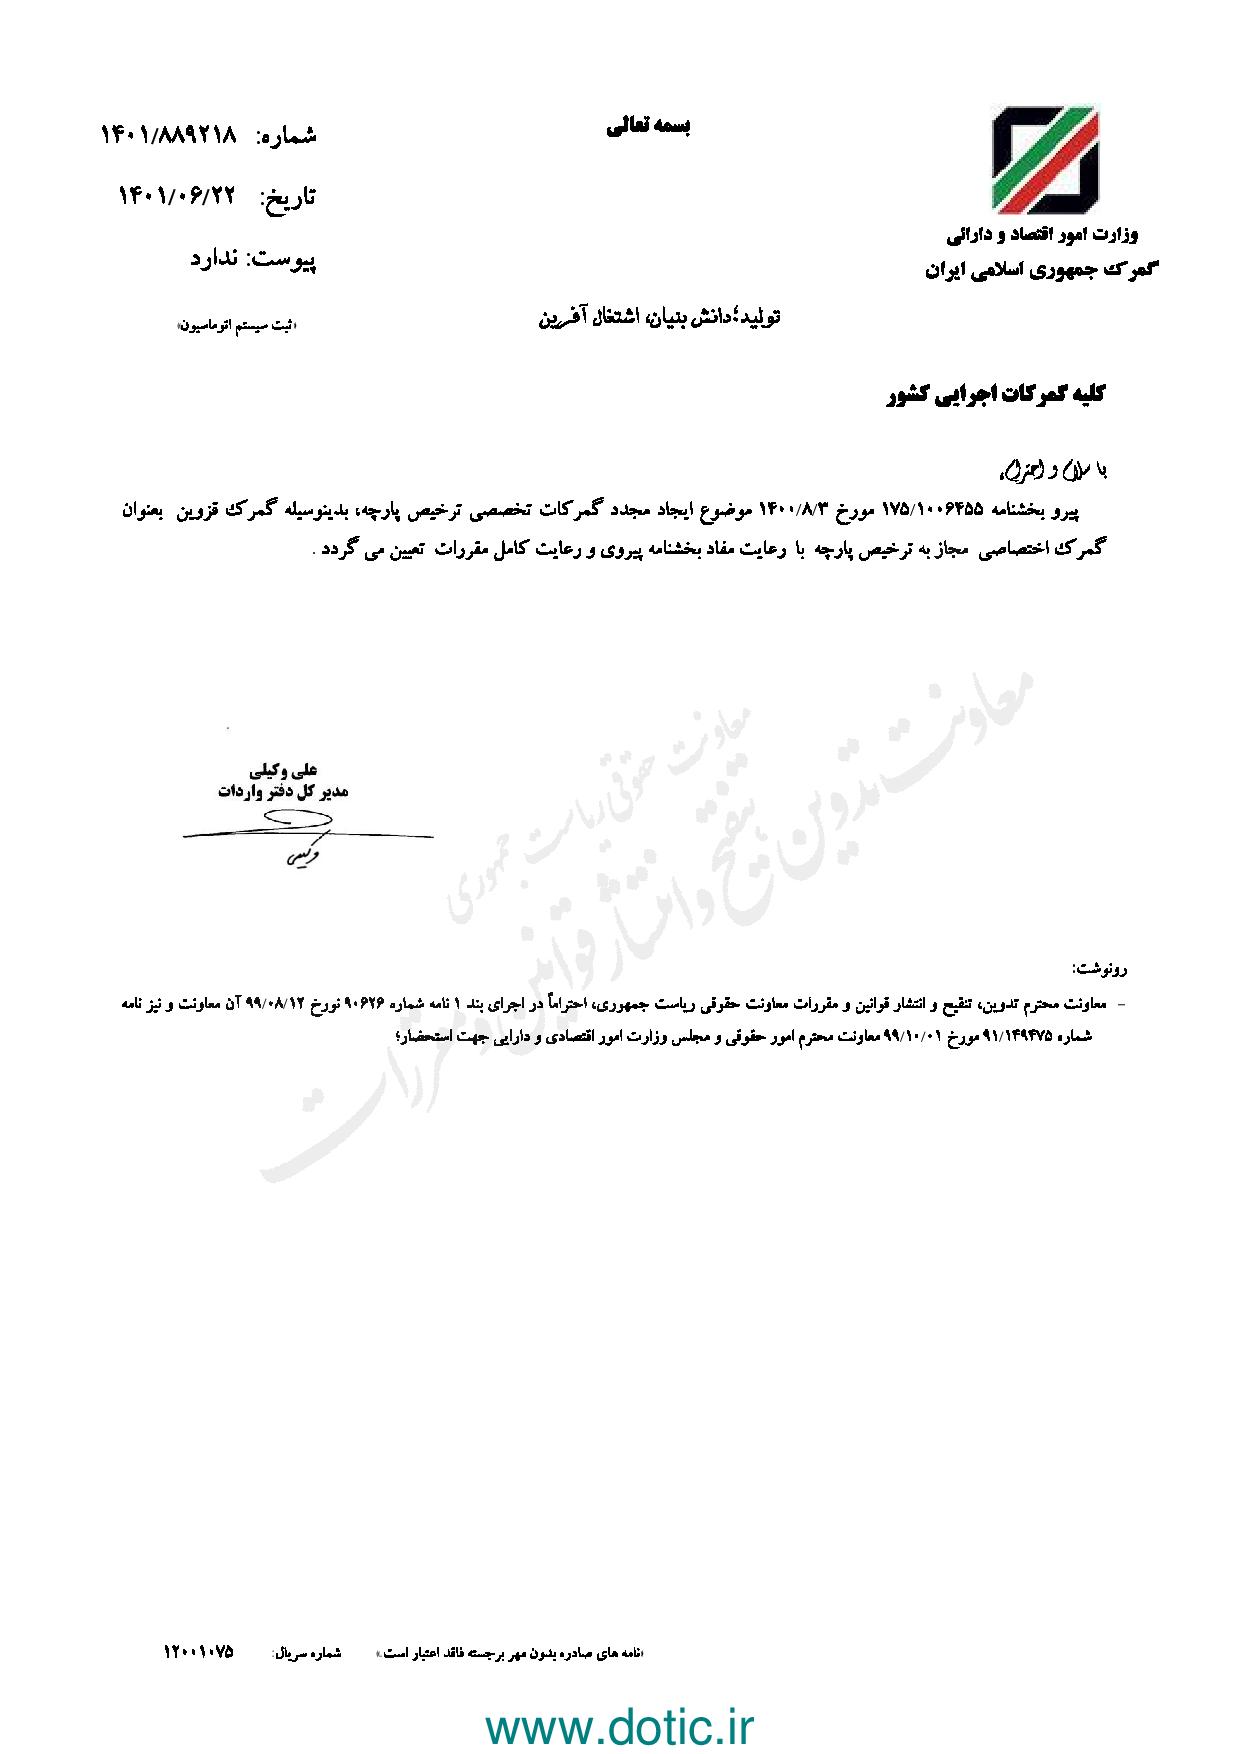 بخشنامه درخصوص تعیین گمرگ قزوین به عنوان گمرگ اختصاصی مجاز به ترخیص پارچه ۱۴۰۱/۰۶/۲۲